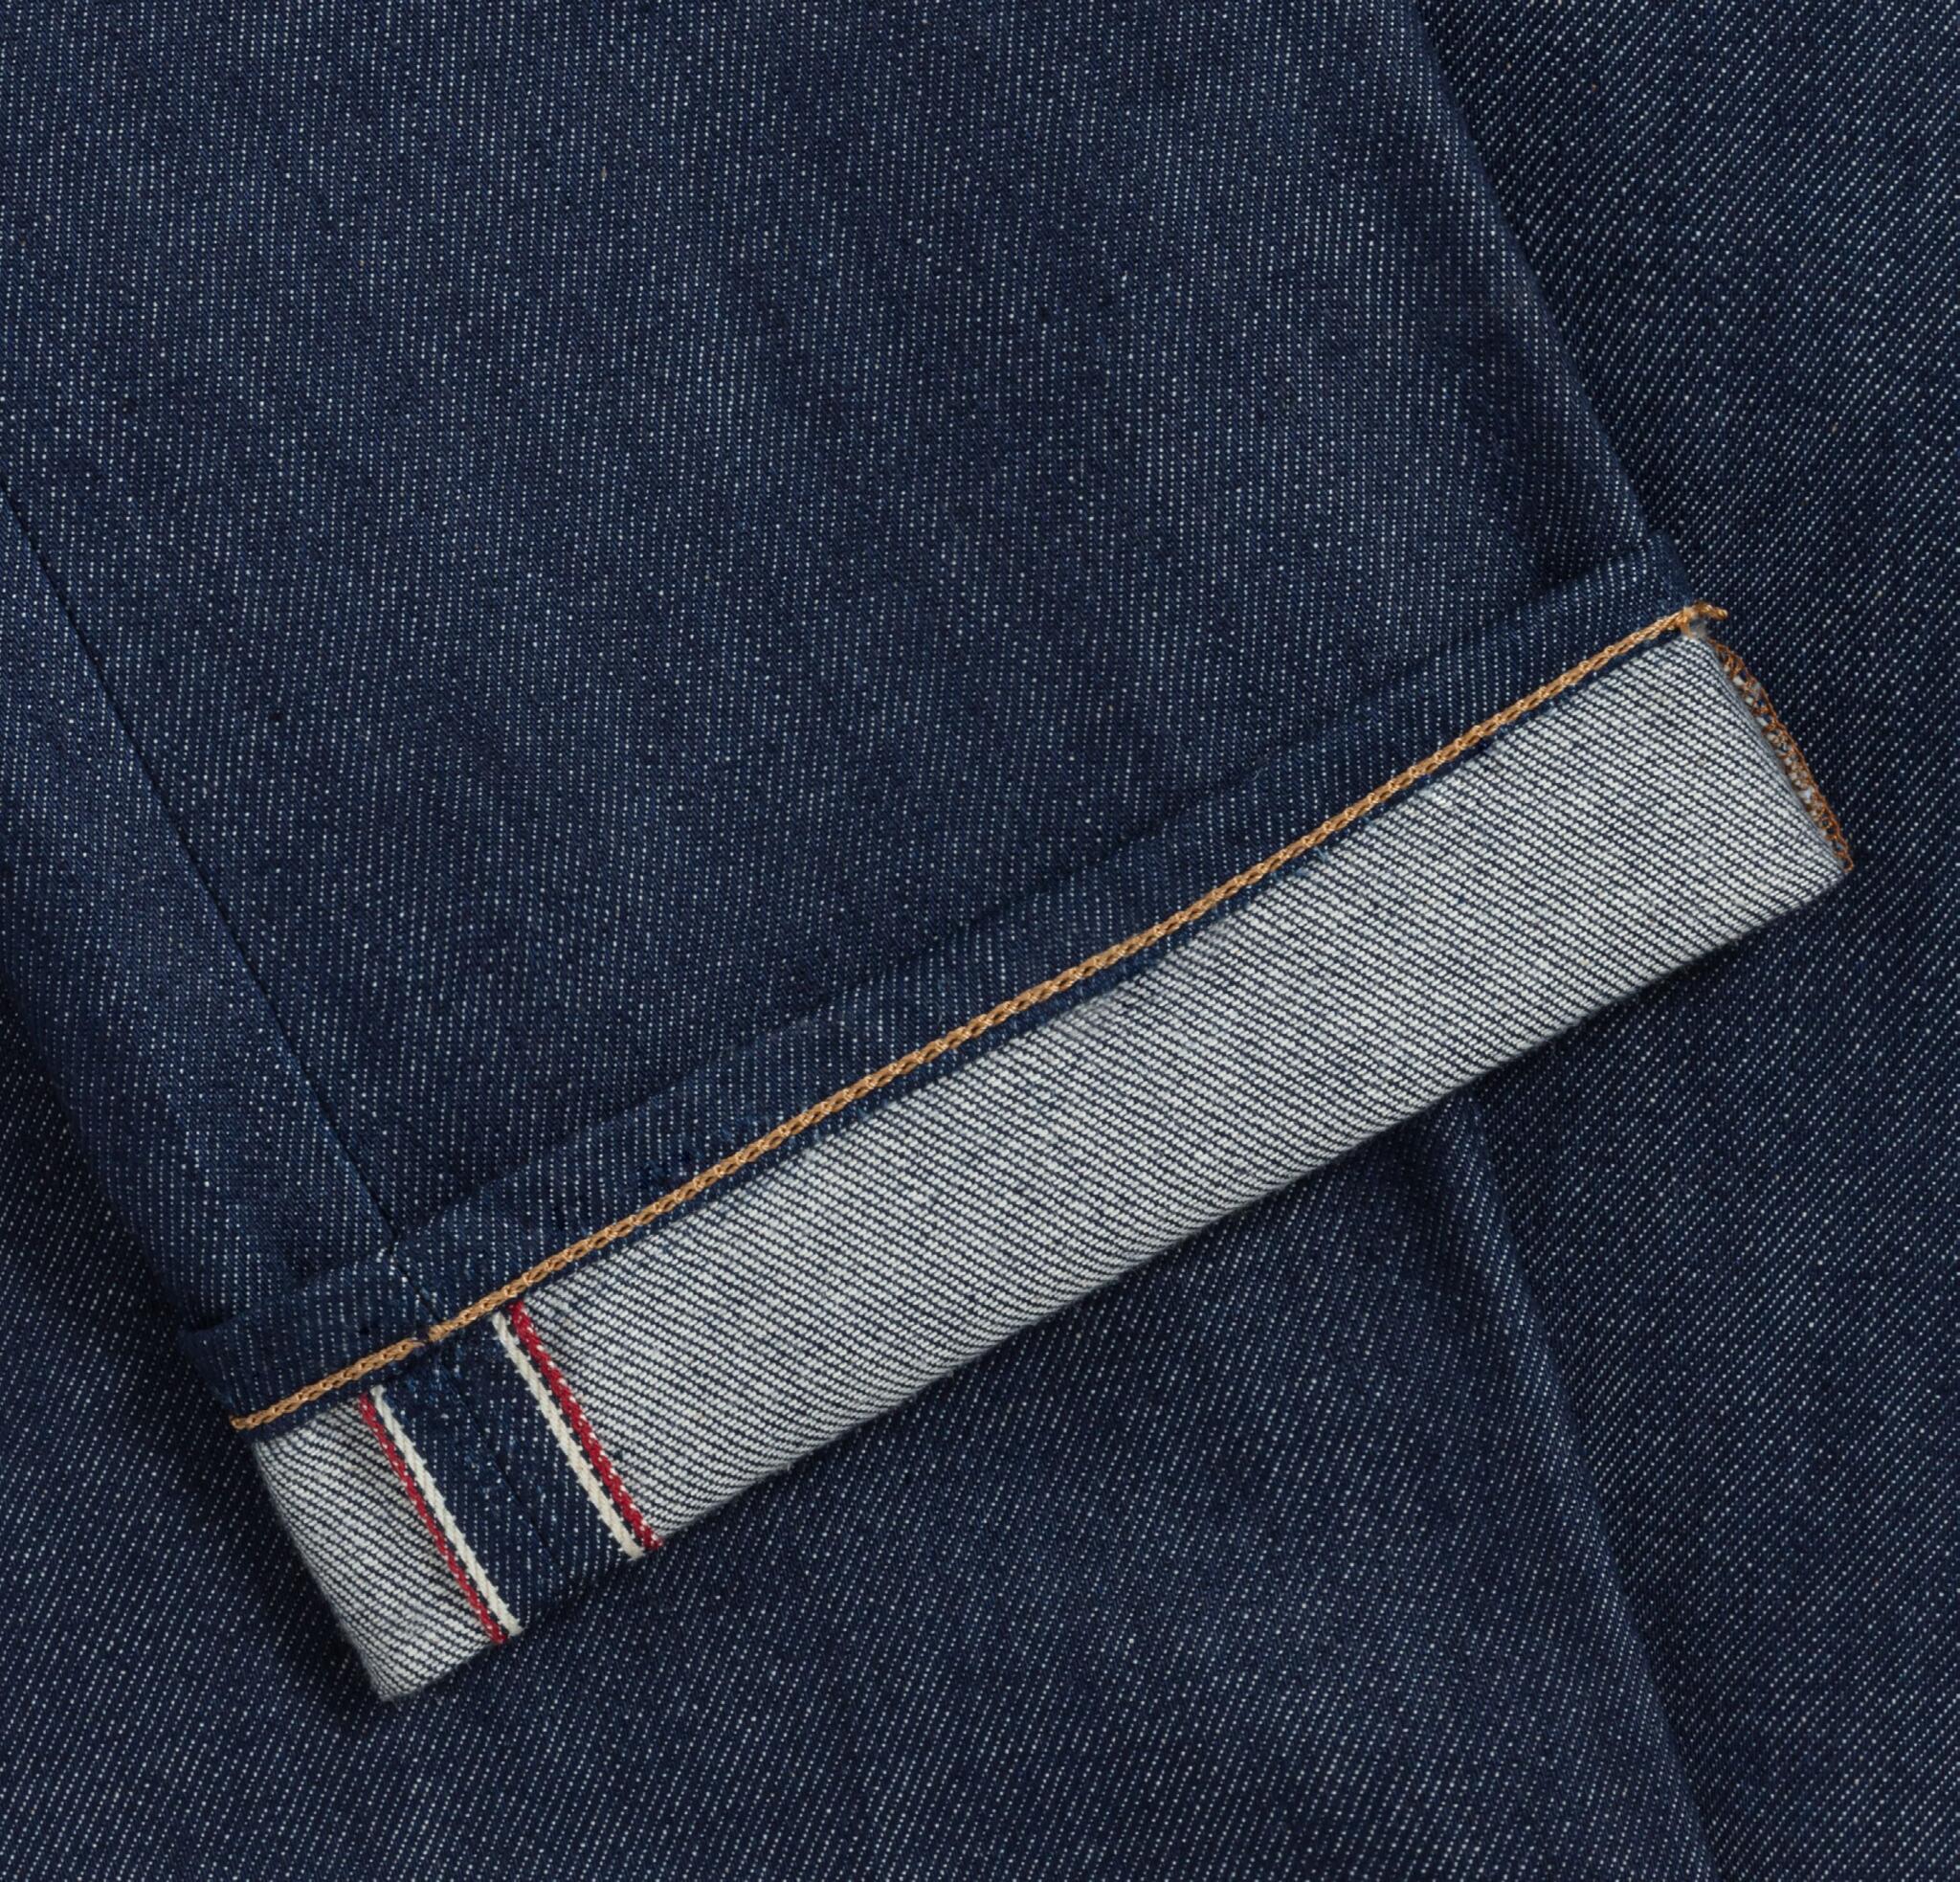 Gabriel le jean par Kidur made in france jean homme fabriqué en france